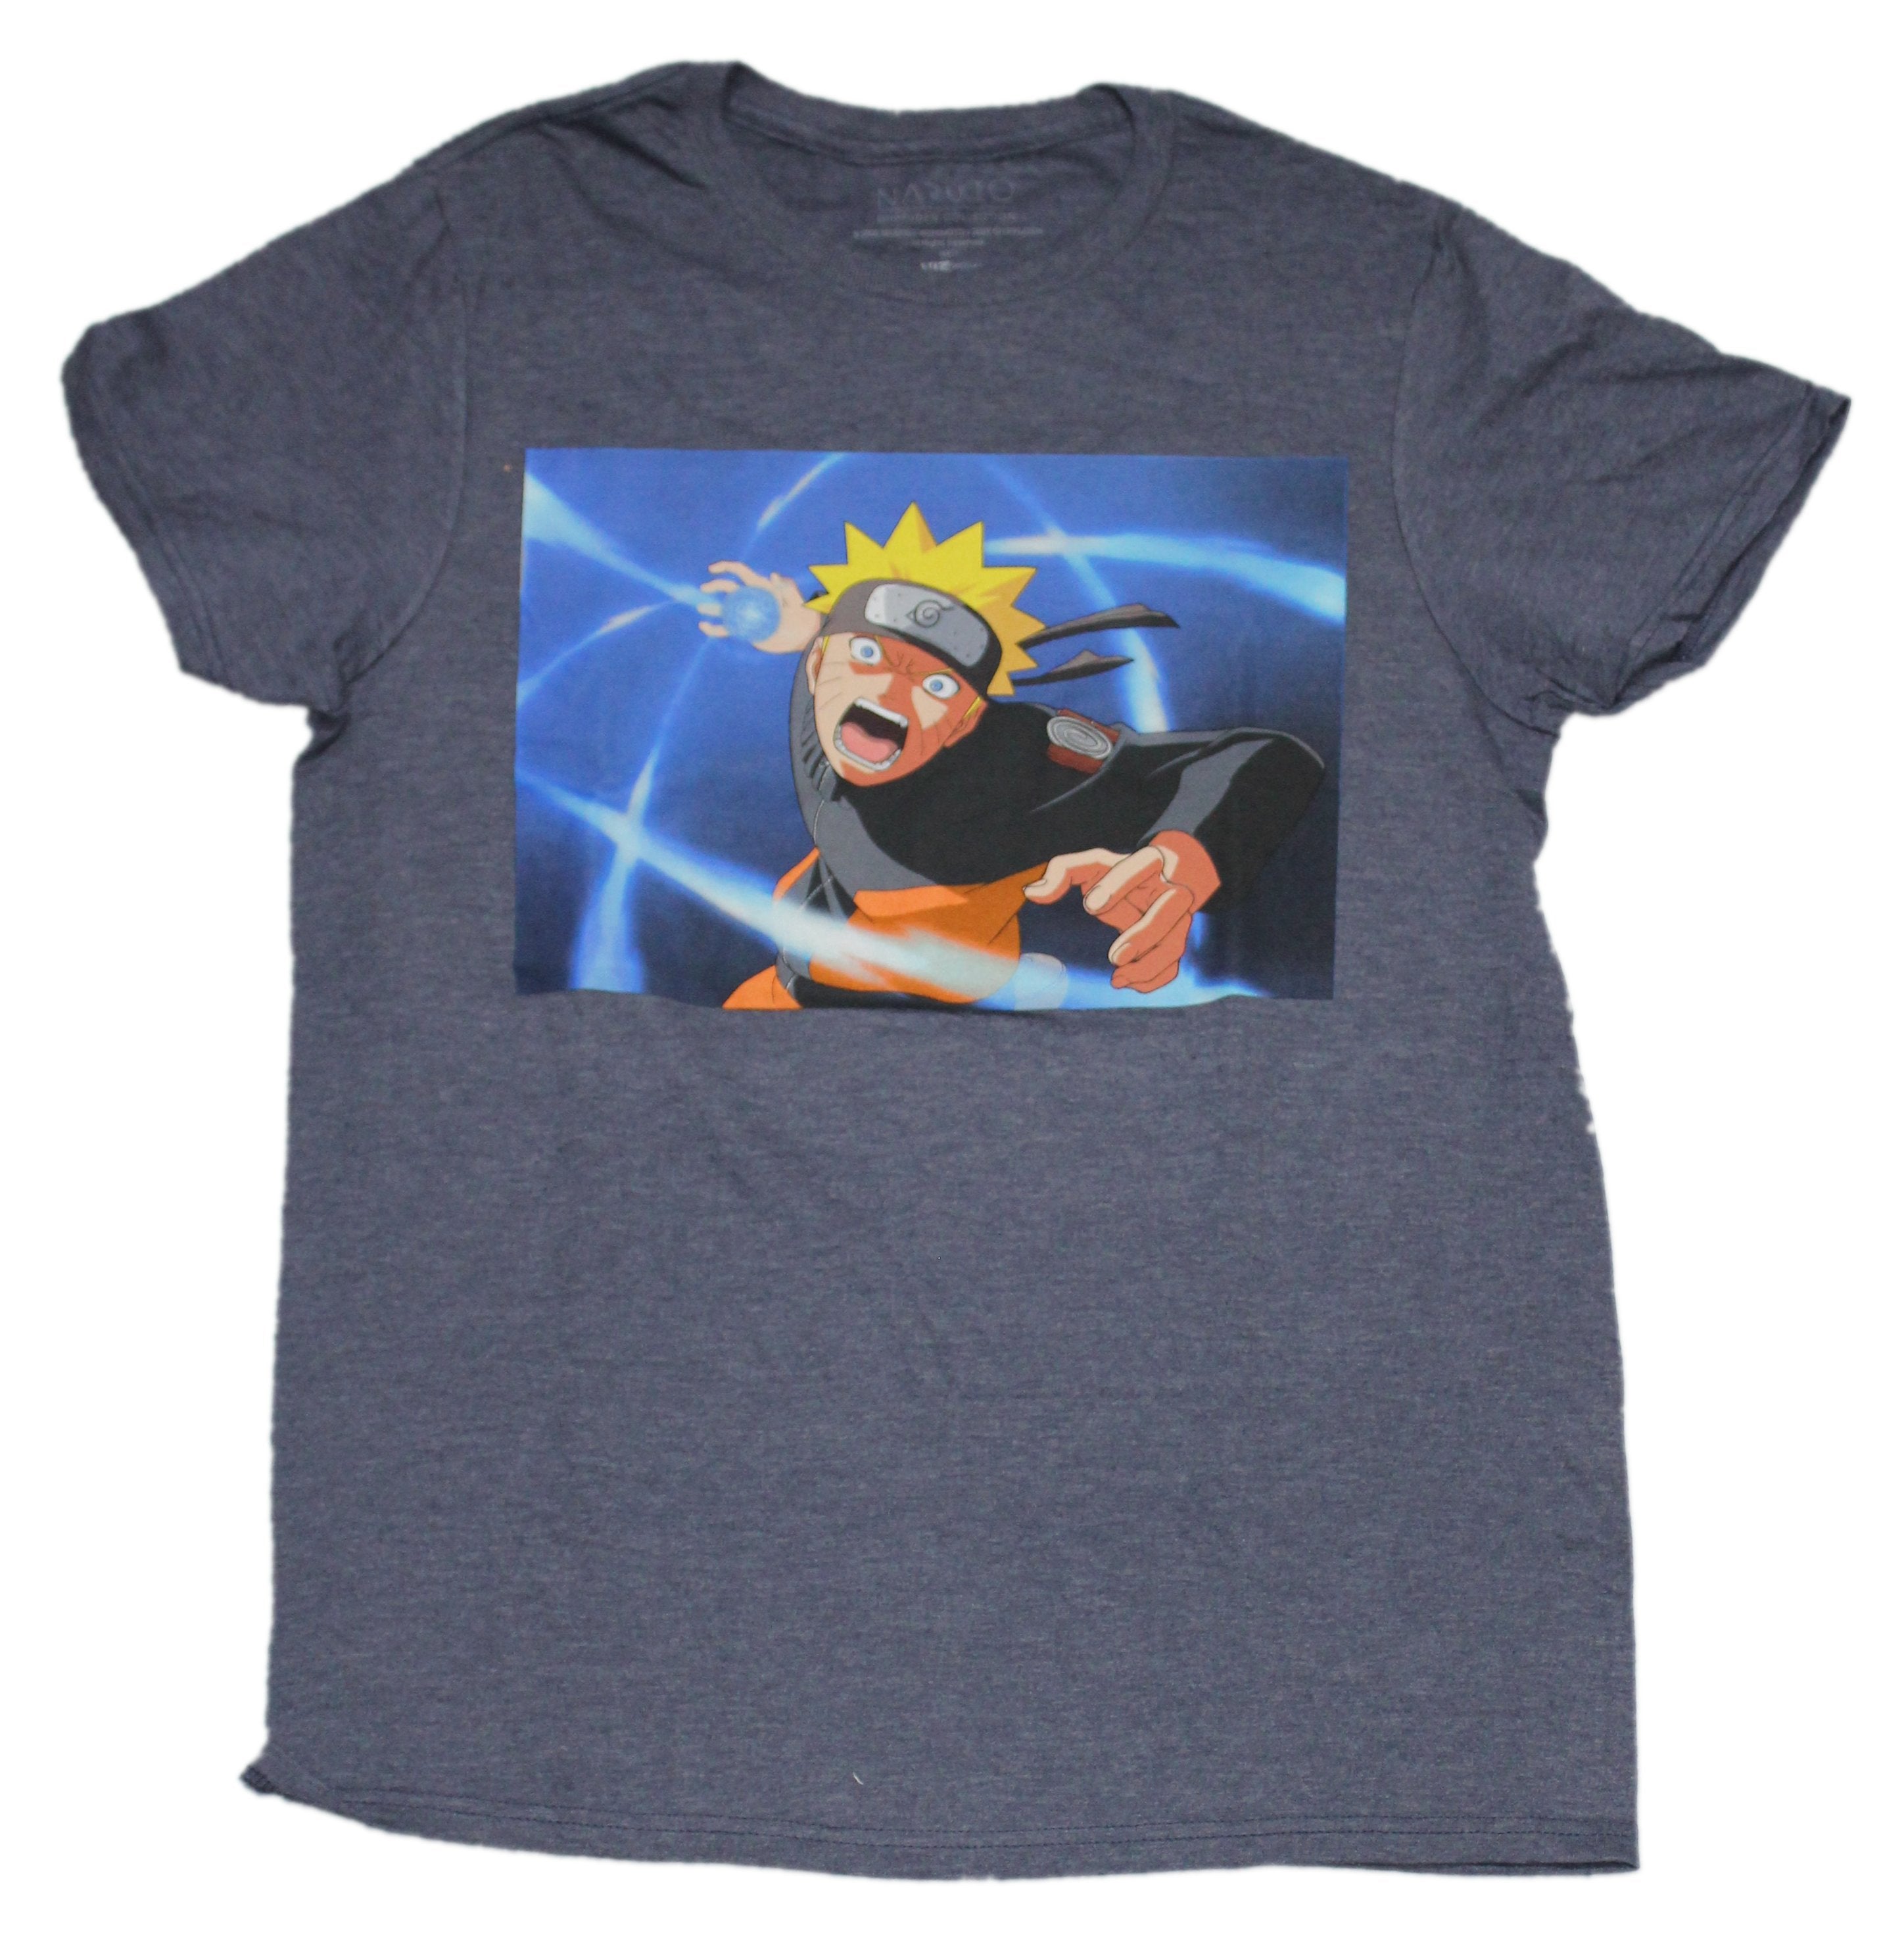 Naruto Shippuden Mens T-Shirt - Blue Attack Box Image